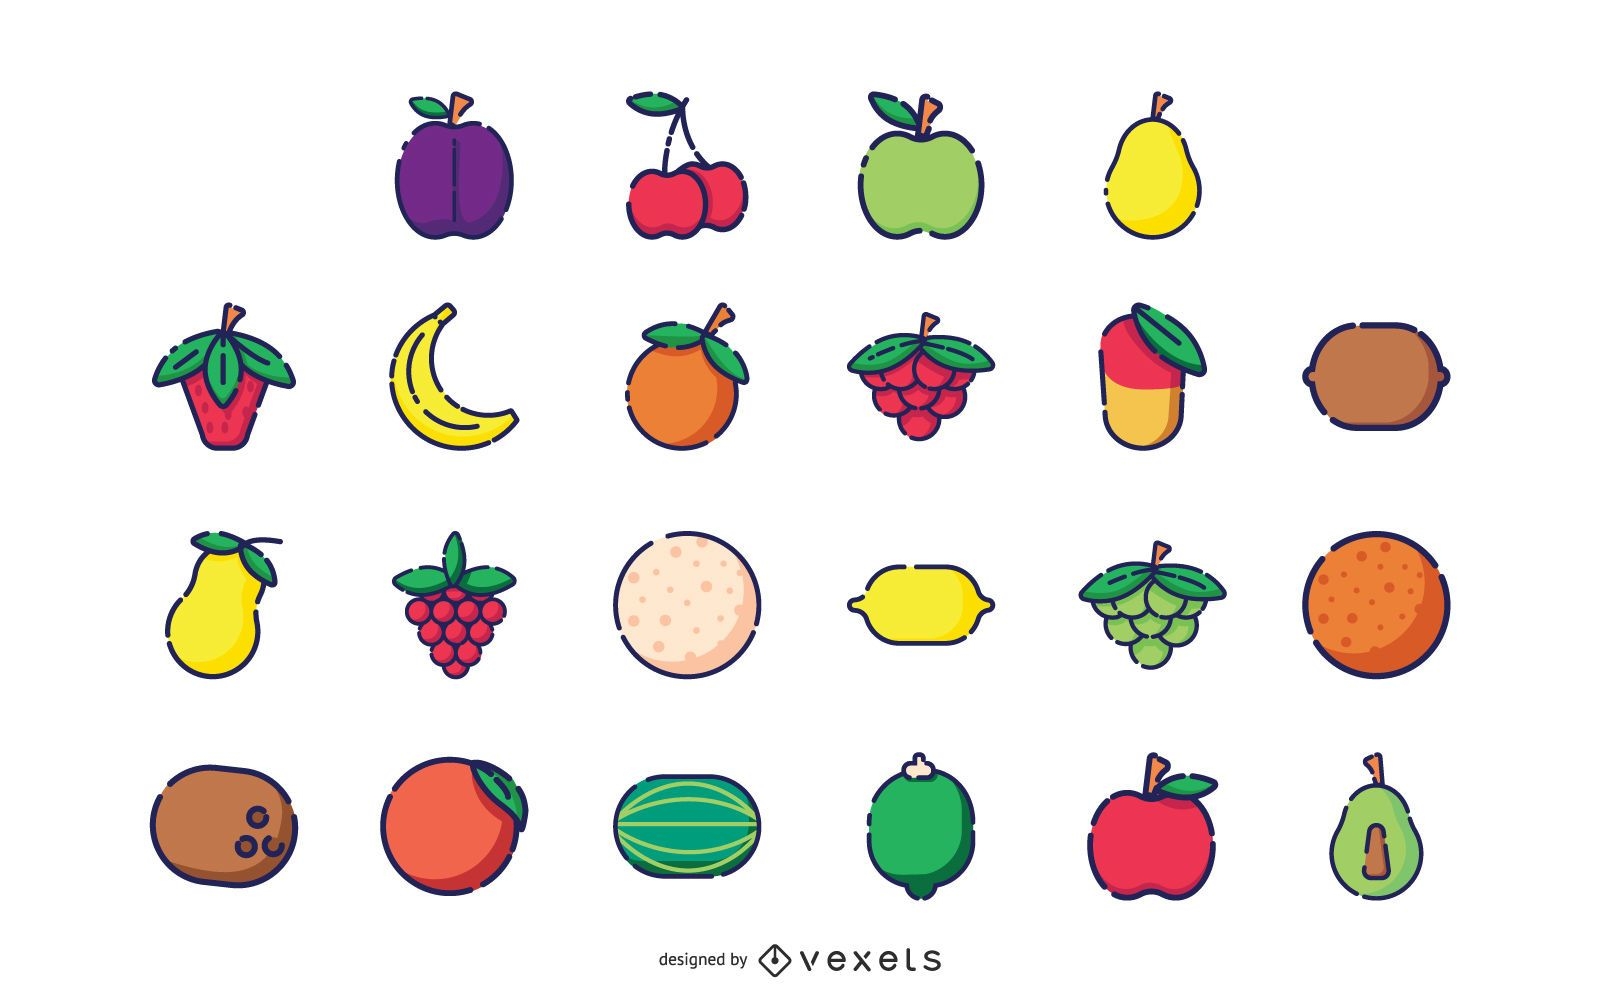 Colección de iconos de frutas